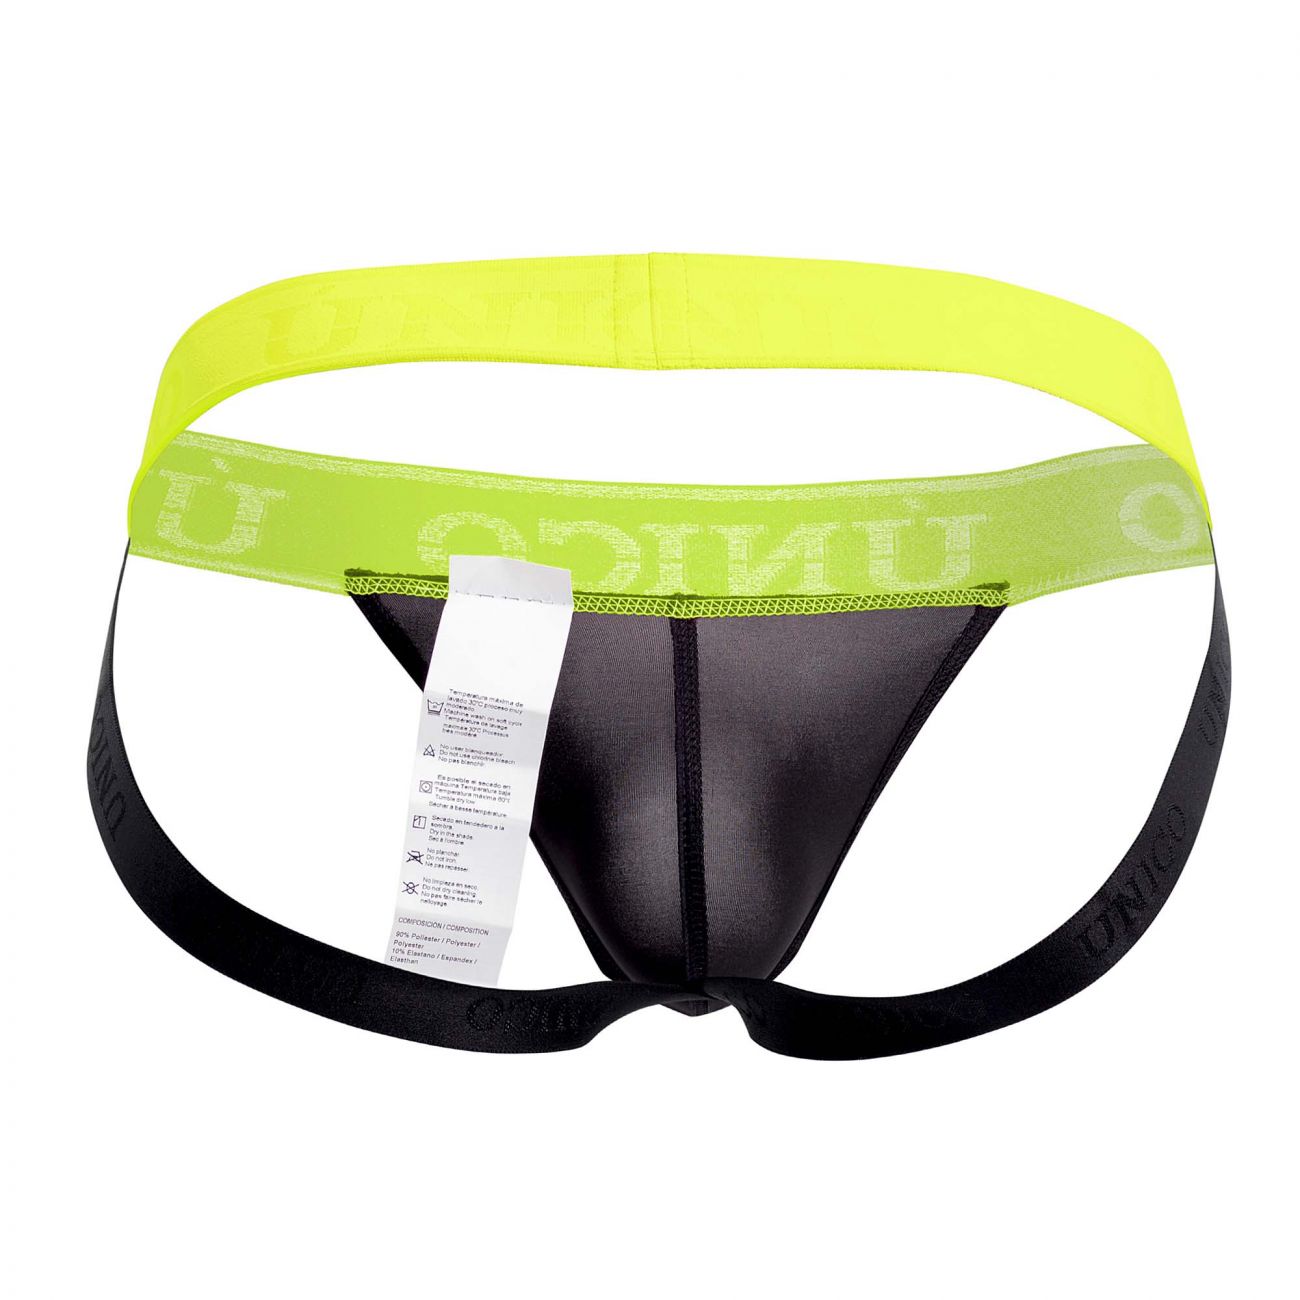 Mens Underwear: Unico 19160301212 COLORS Corriente Jockstrap | eBay